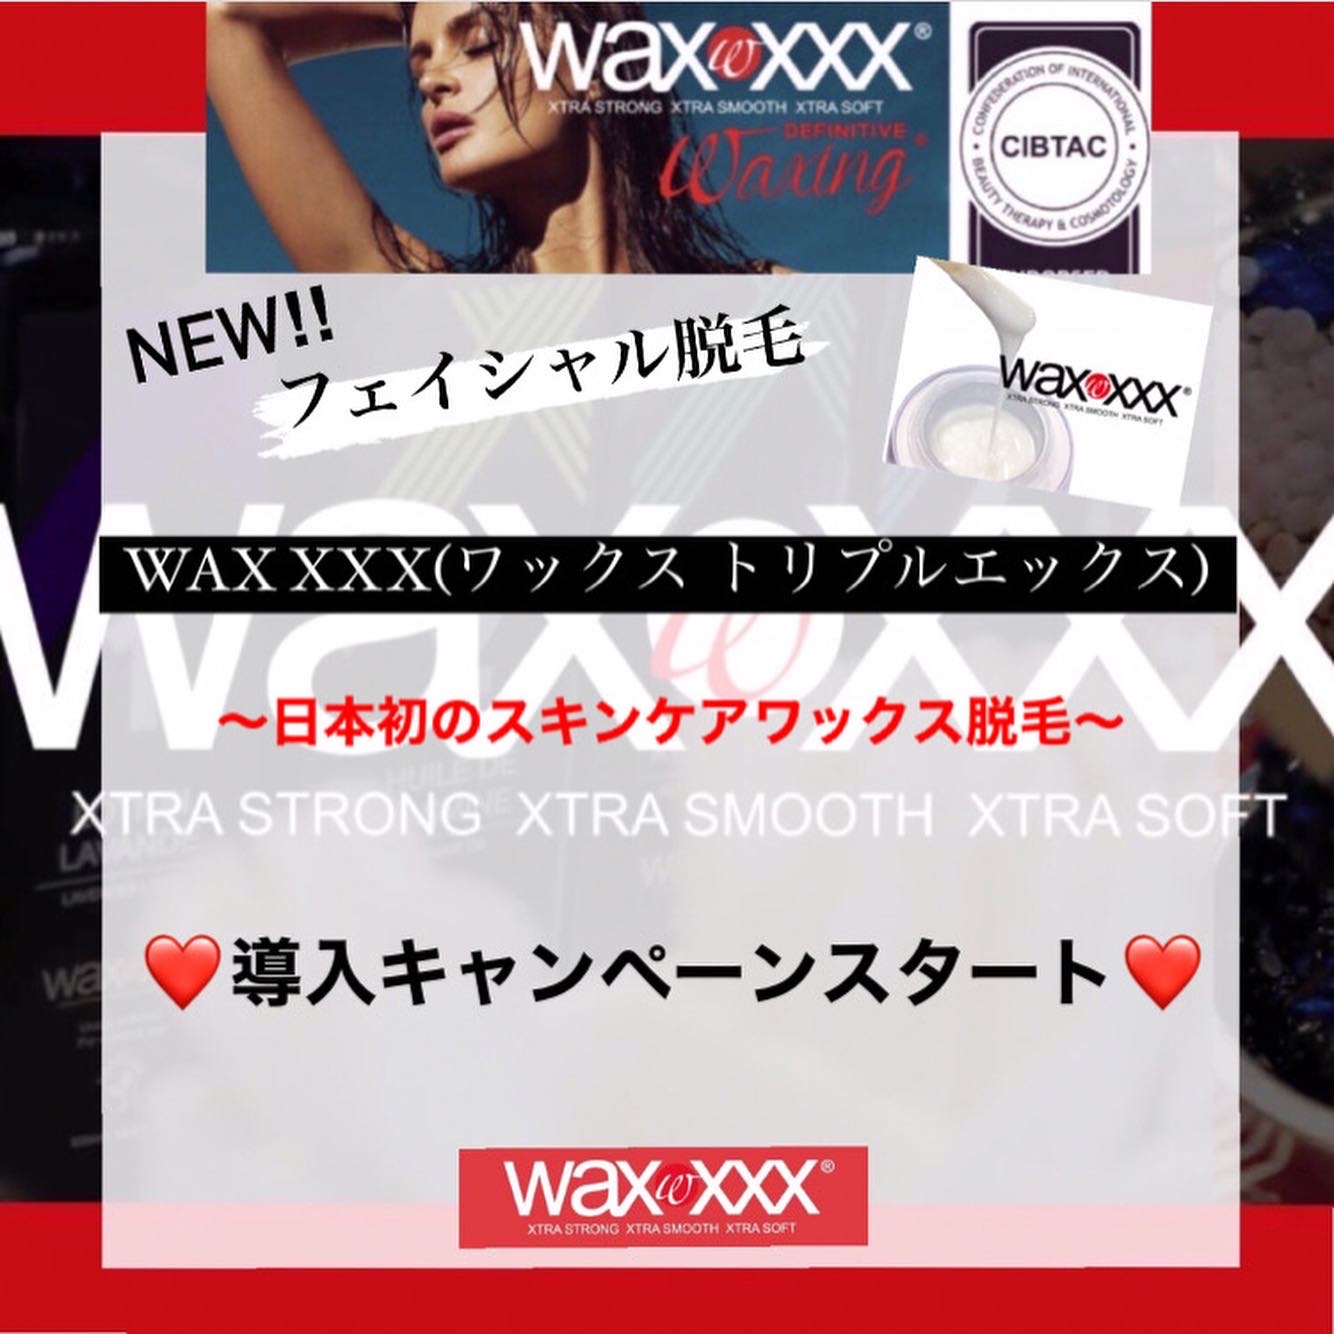 フェイシャル脱毛】WAX XXX(ワックス トリプルエックス)導入